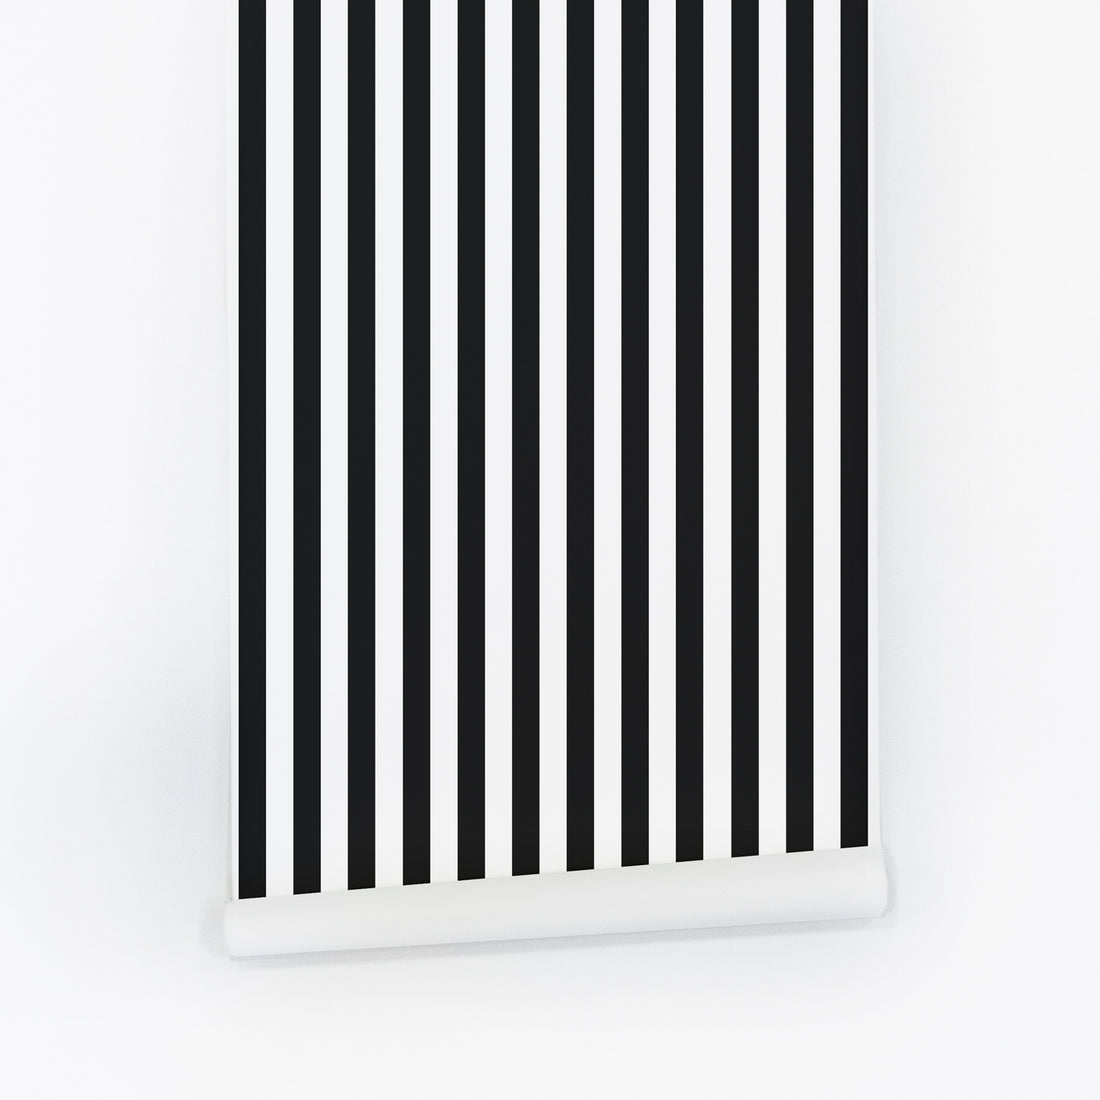 Classic black and white stripe design wallpaper